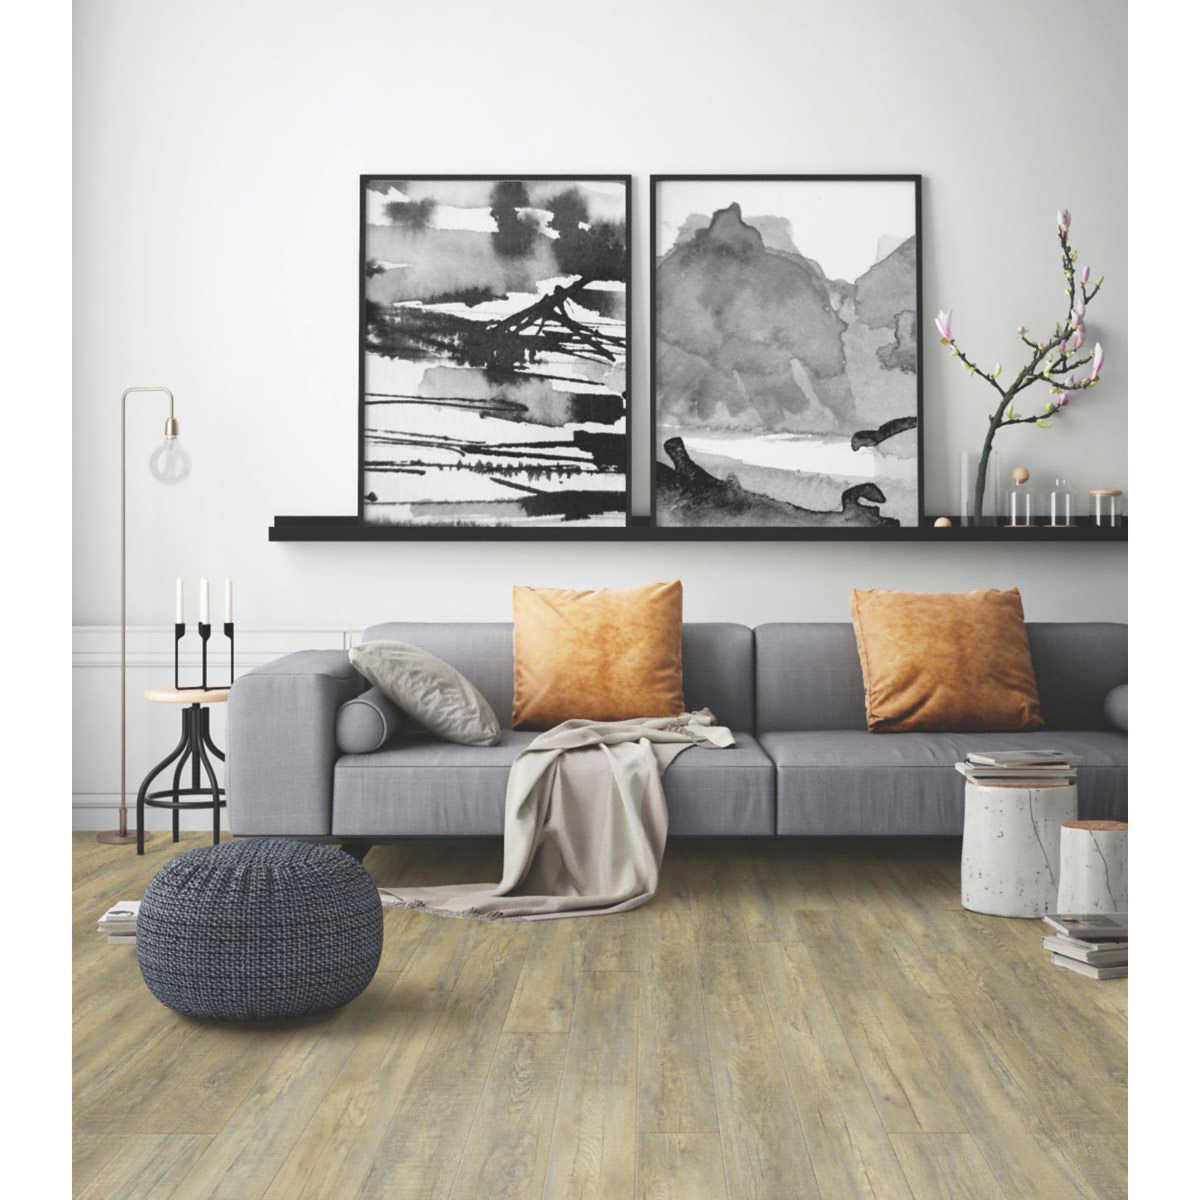 Mohawk Home Rivers Edge Oak Waterproof, Mohawk Luxury Vinyl Plank Flooring Reviews